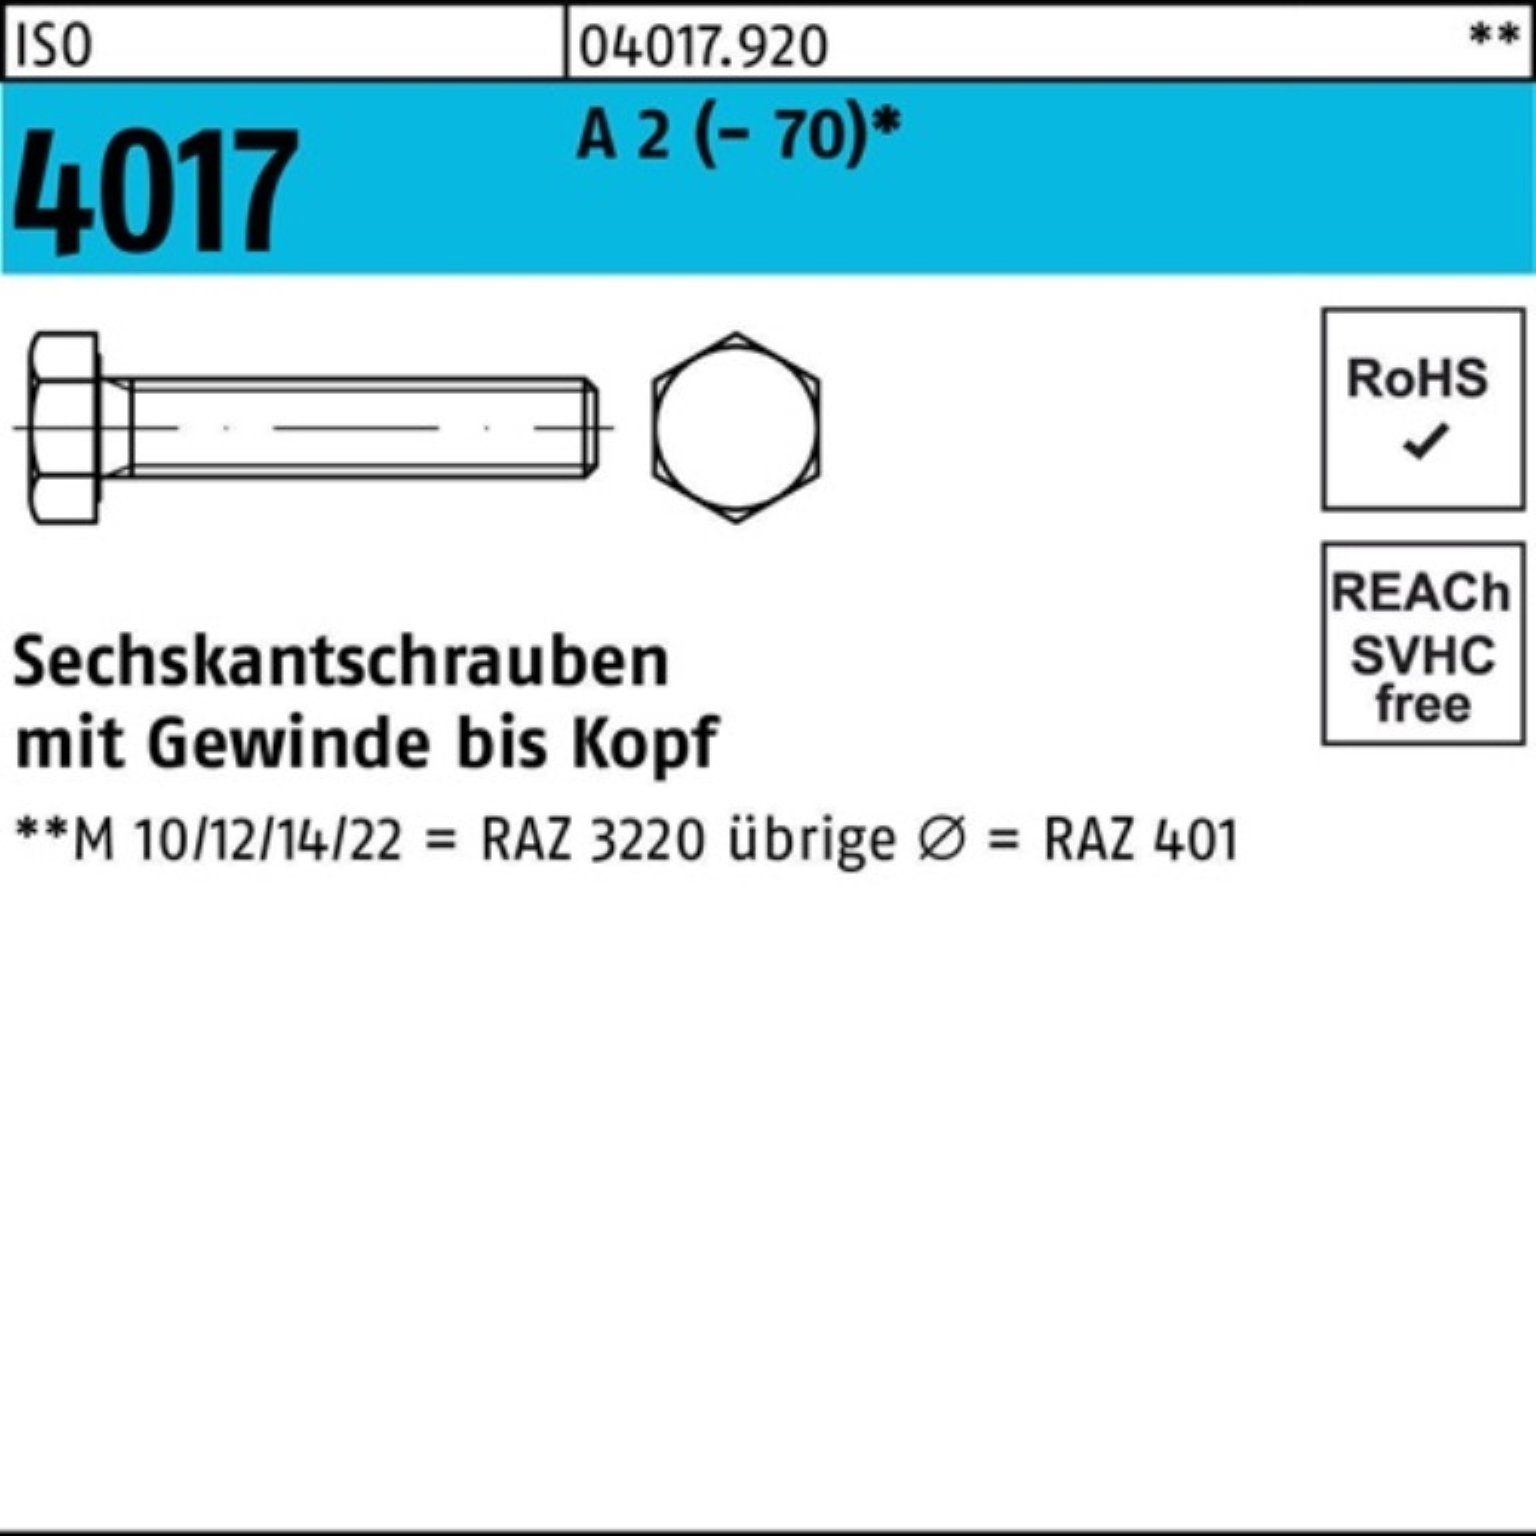 Bufab Sechskantschraube 100er Pack Sechskantschraube ISO 4017 VG M6x 55 A 2 (70) 100 Stück